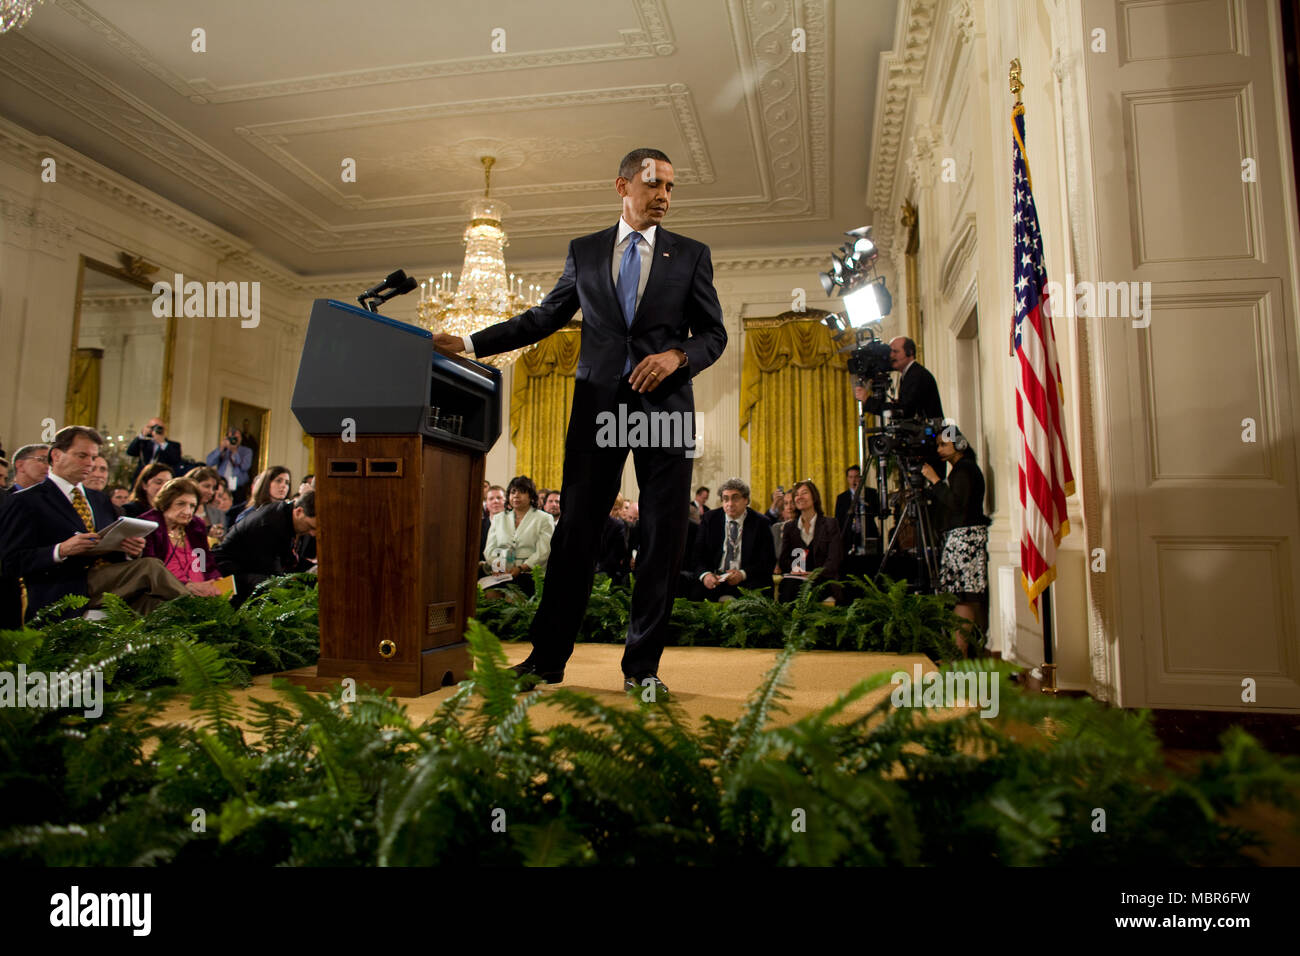 Le président Barack Obama quitte le podium après un premier temps conférence de presse dans l'East Room de la Maison Blanche, le mercredi 29 avril 2009. ..Photo Officiel de la Maison Blanche par Chuck Kennedy Banque D'Images